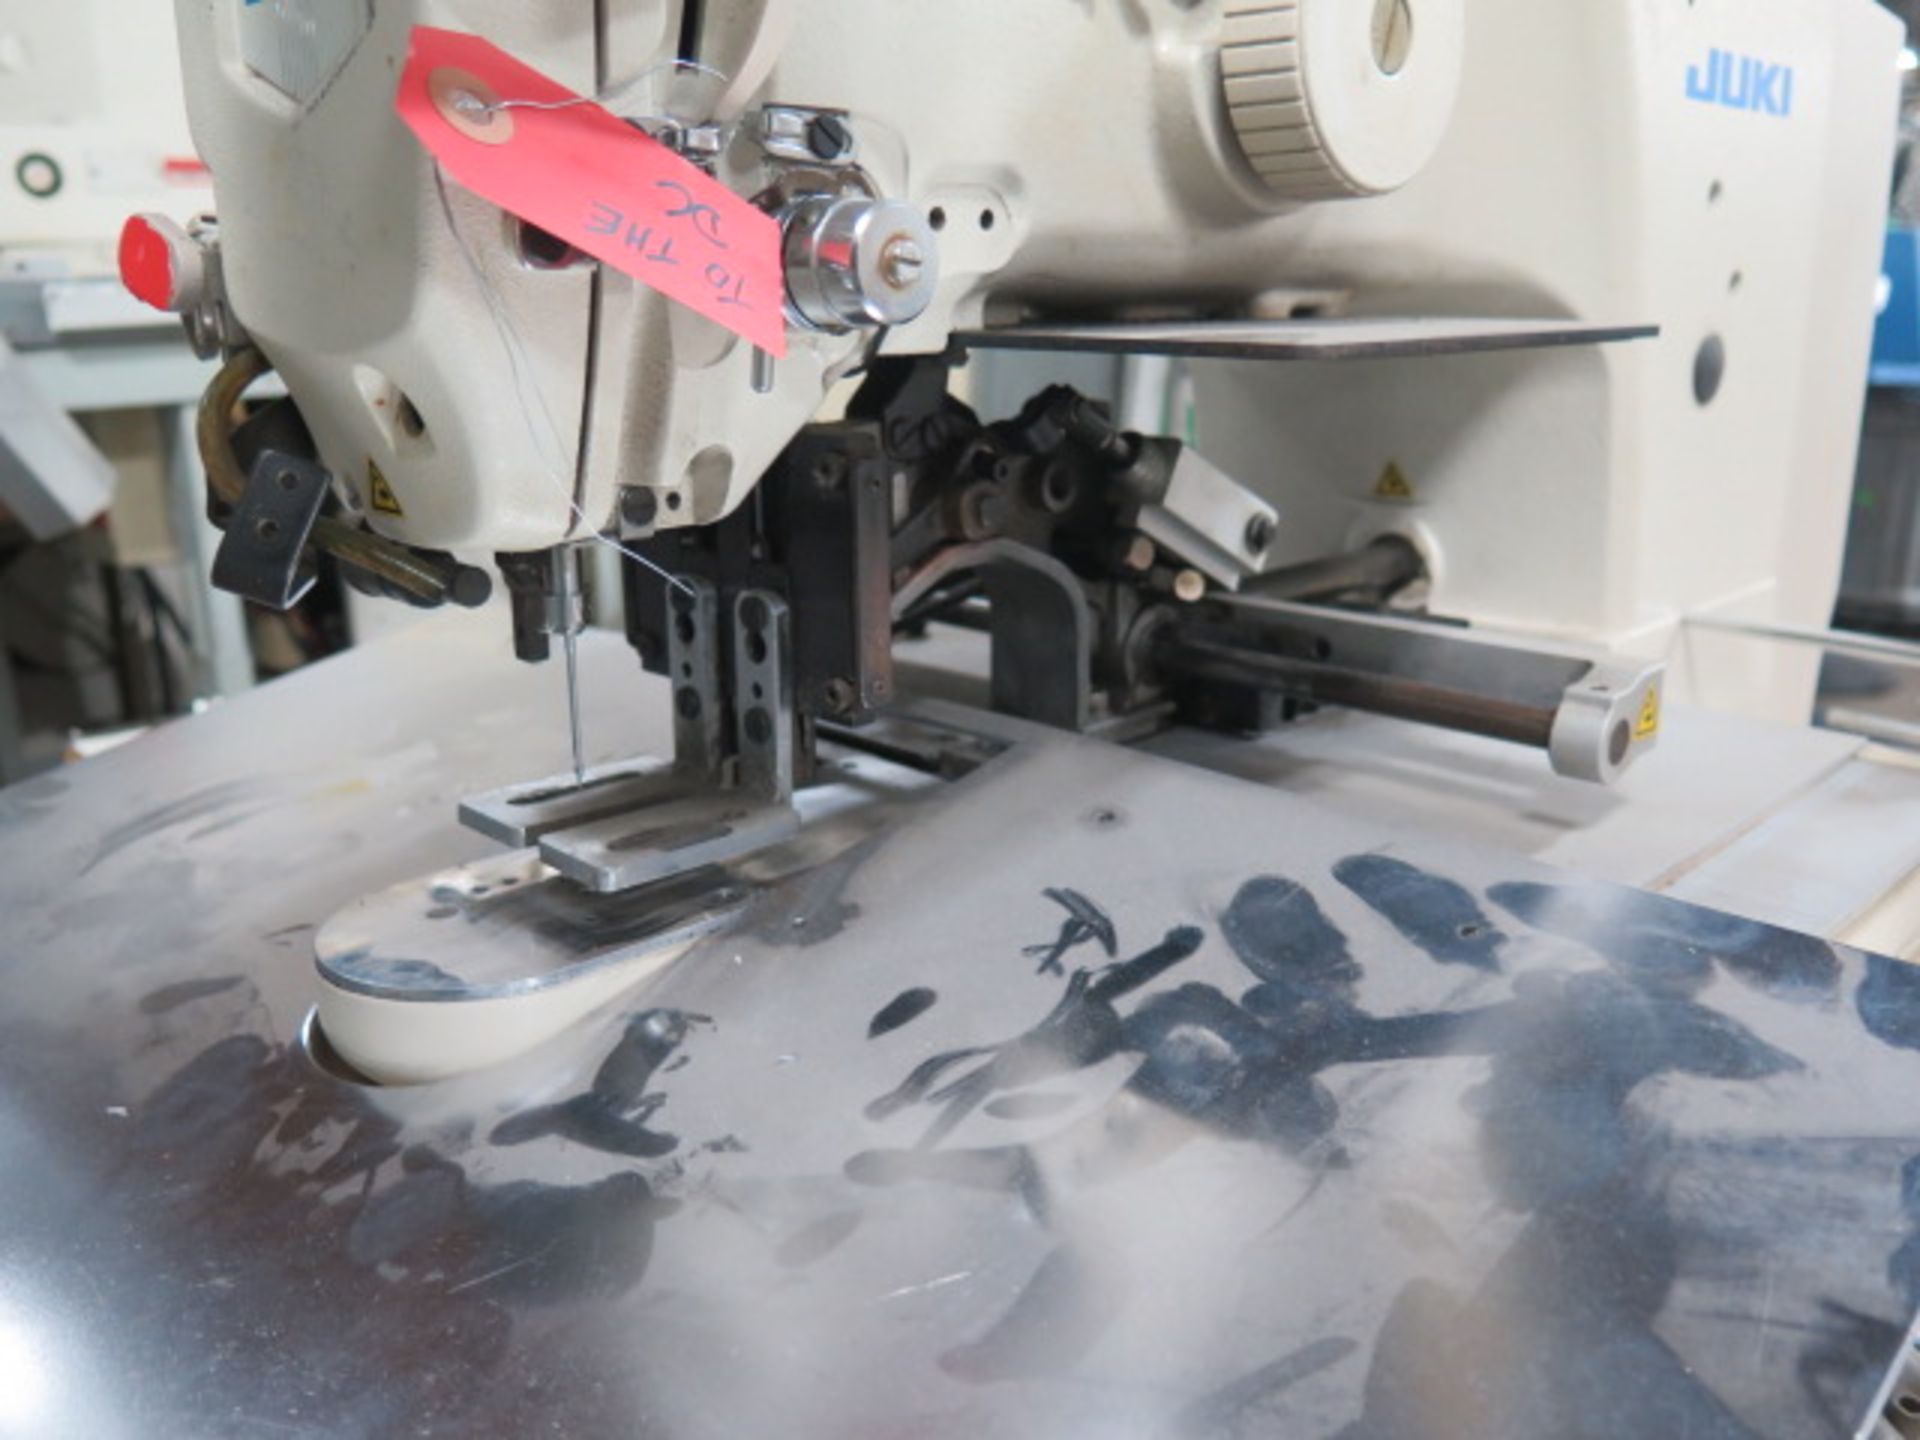 Juki AMS-210EN Industrial Sewing Machine s/n 2A3DF00037 w/ Juki IP-420 Controls, SOLD AS IS - Image 6 of 8